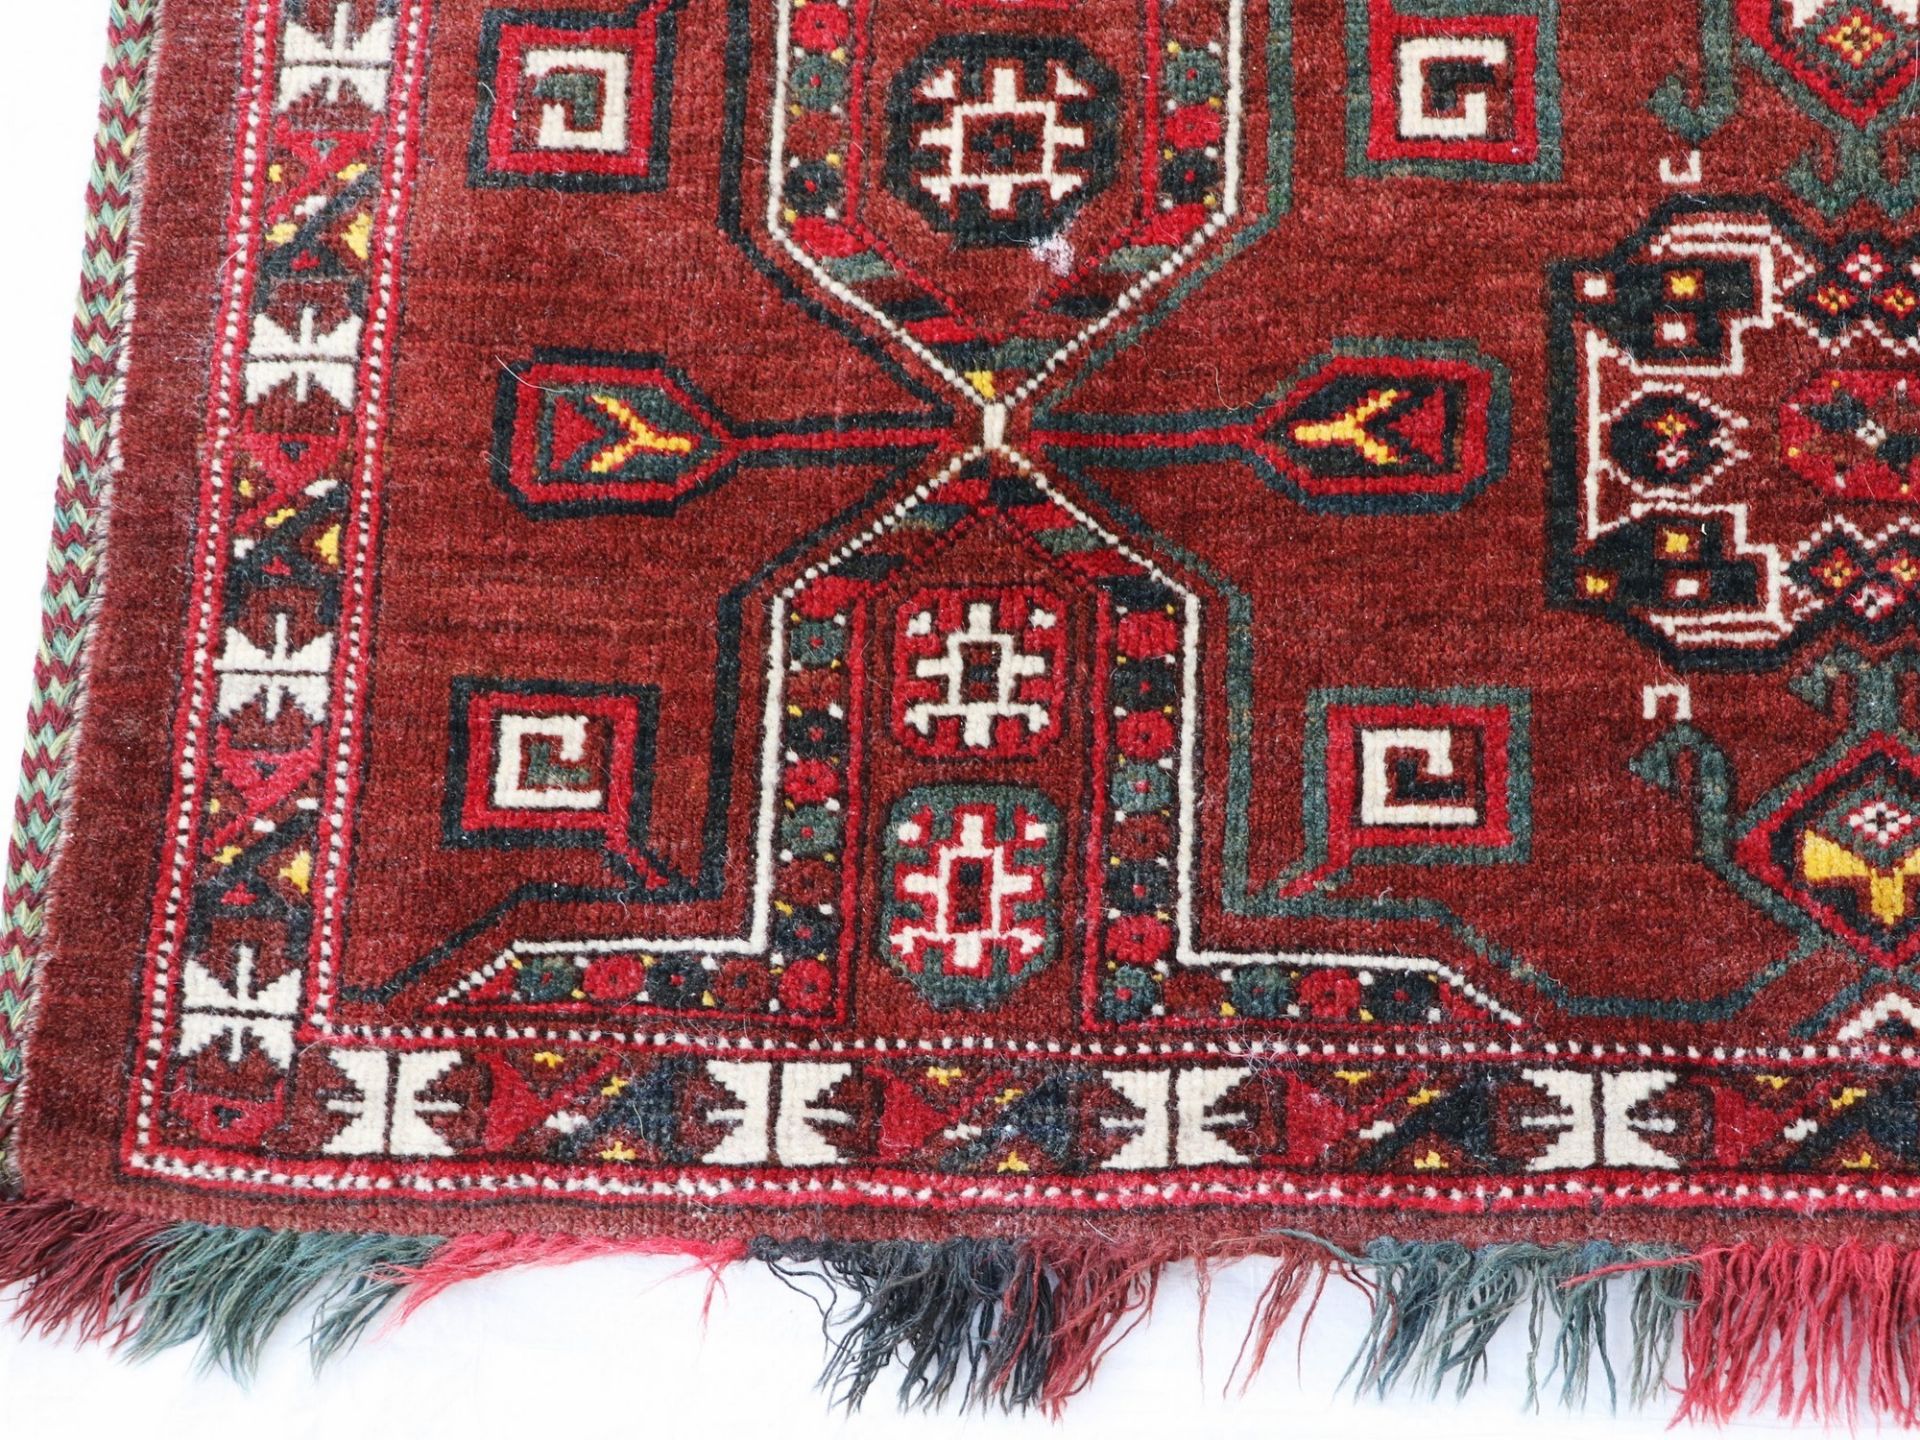 Satteltaschenfront Turkmenistan, Wolle, umgearbeitet, fortlaufendes Medaillonmotiv, rotgrundig, - Bild 2 aus 7